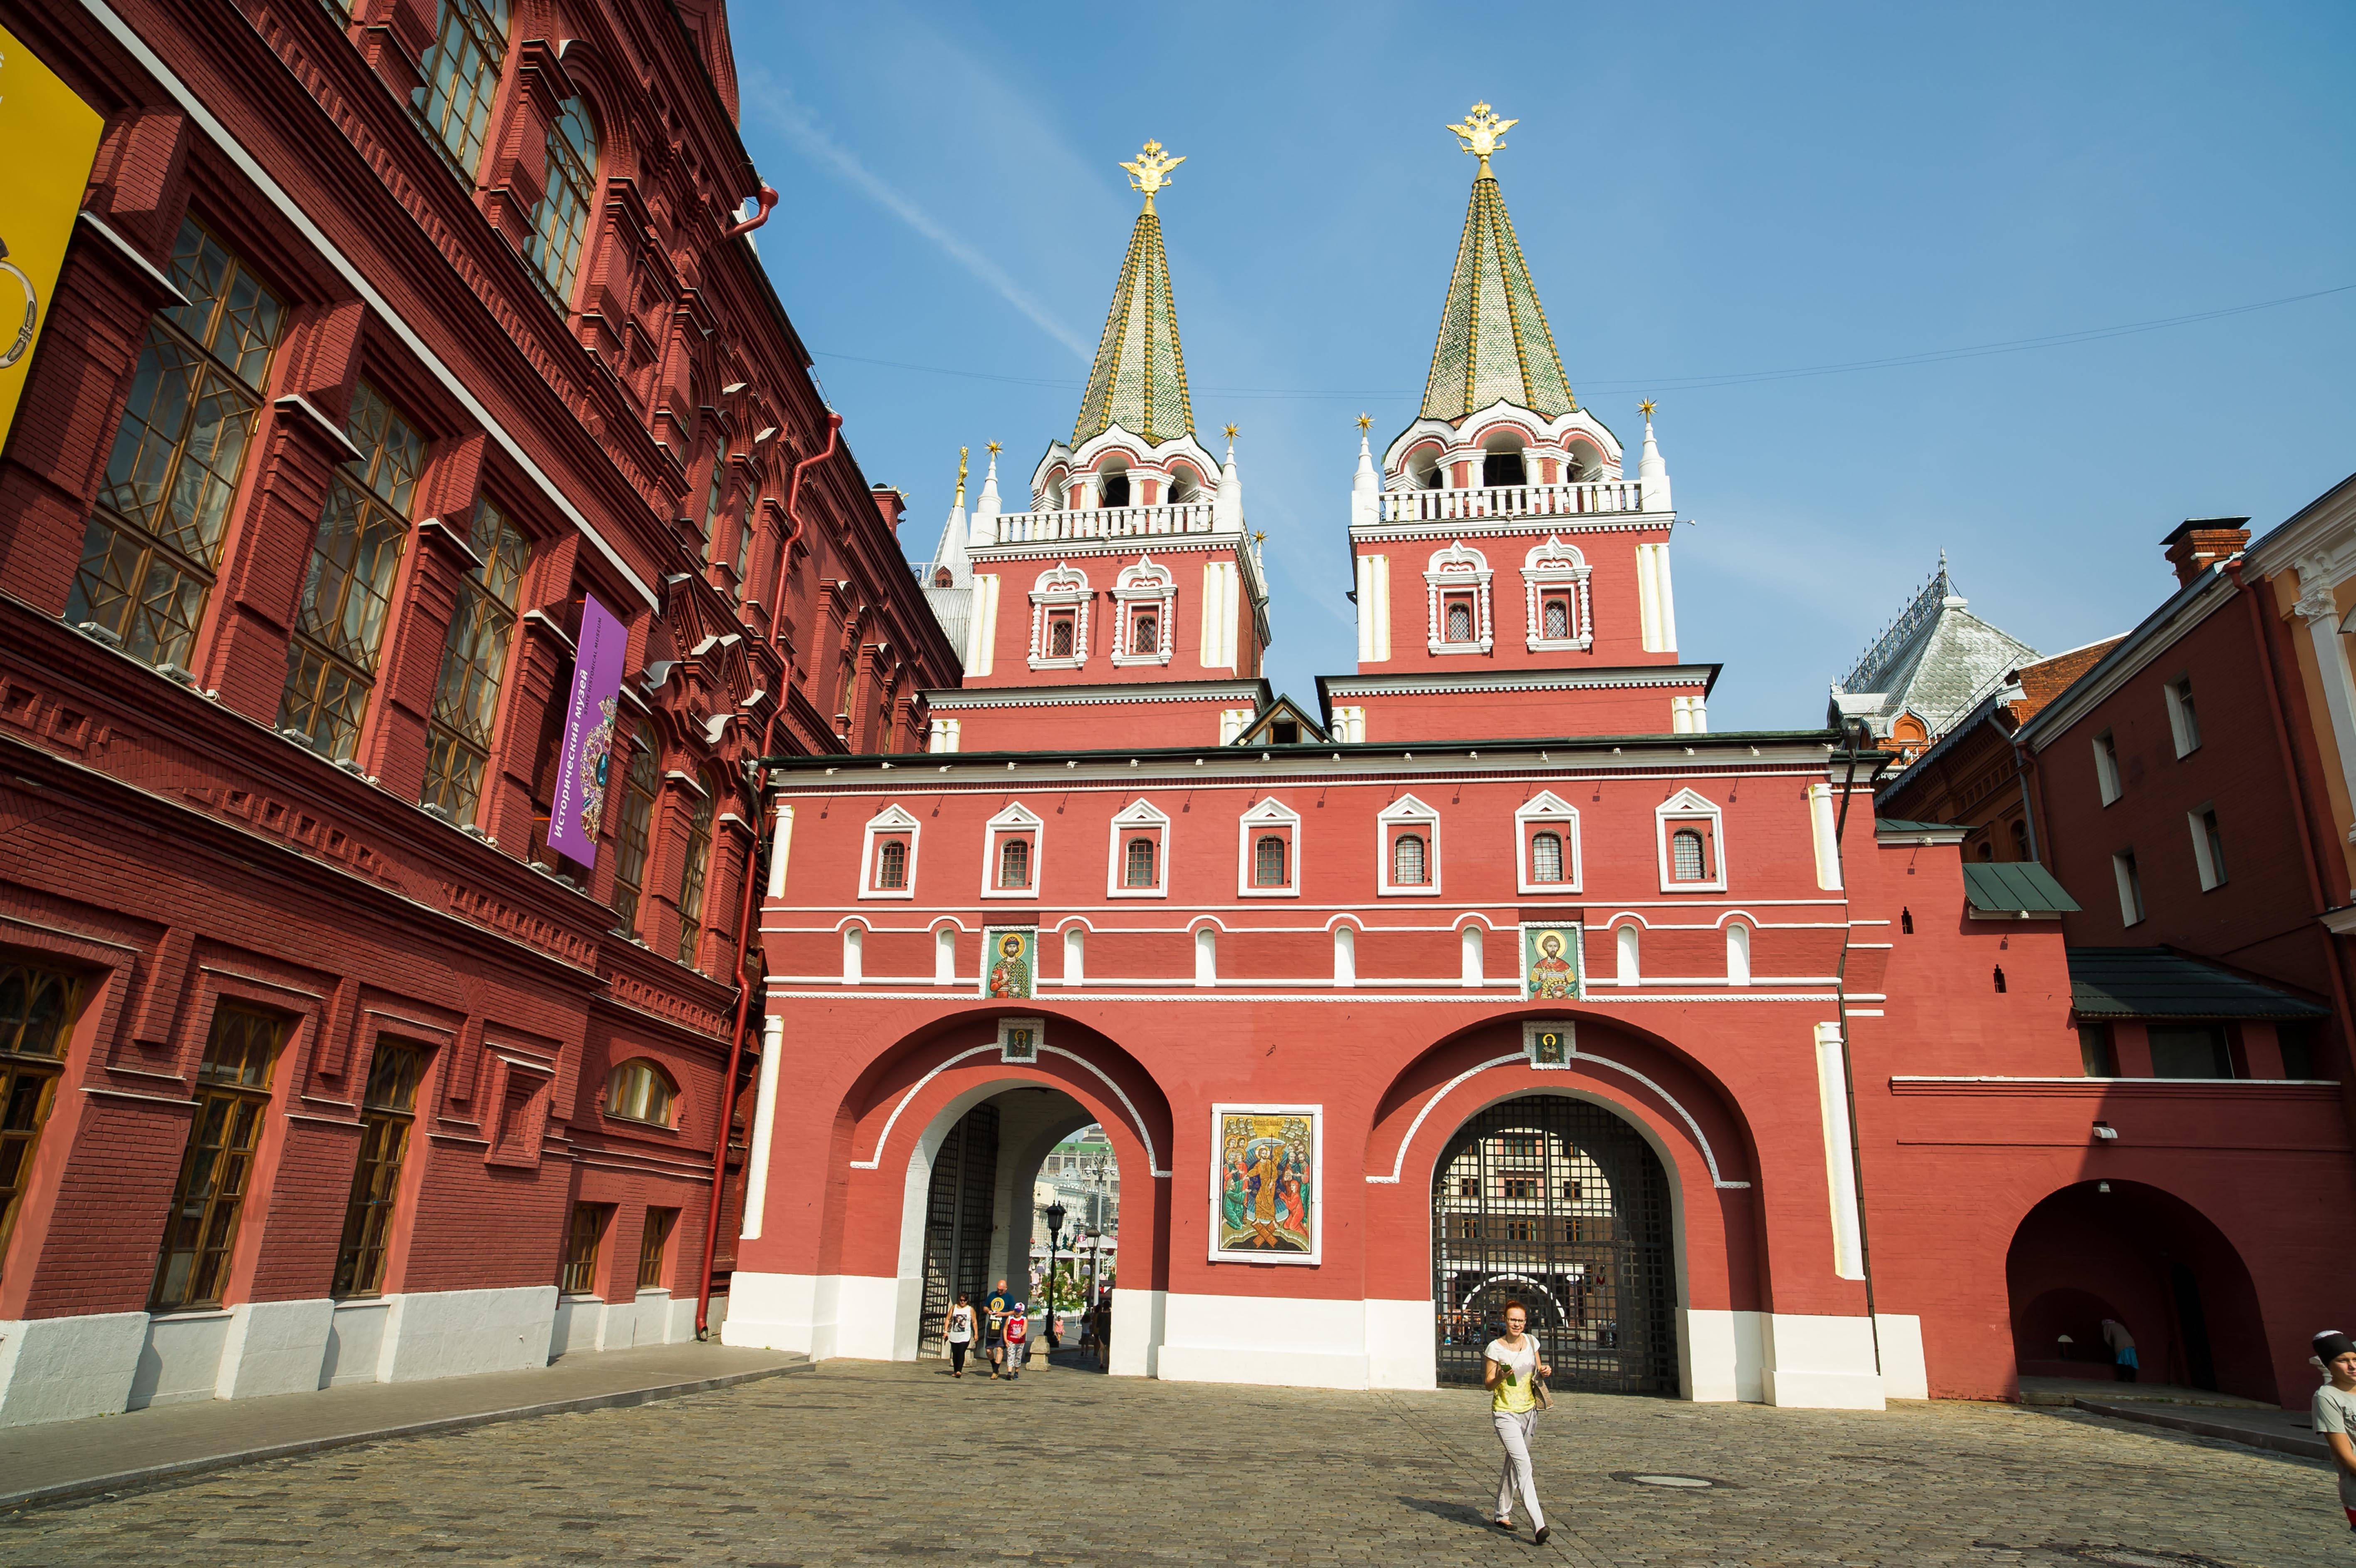 红场是俄罗斯首都莫斯科市中心的著名广场,位于莫斯科市中心